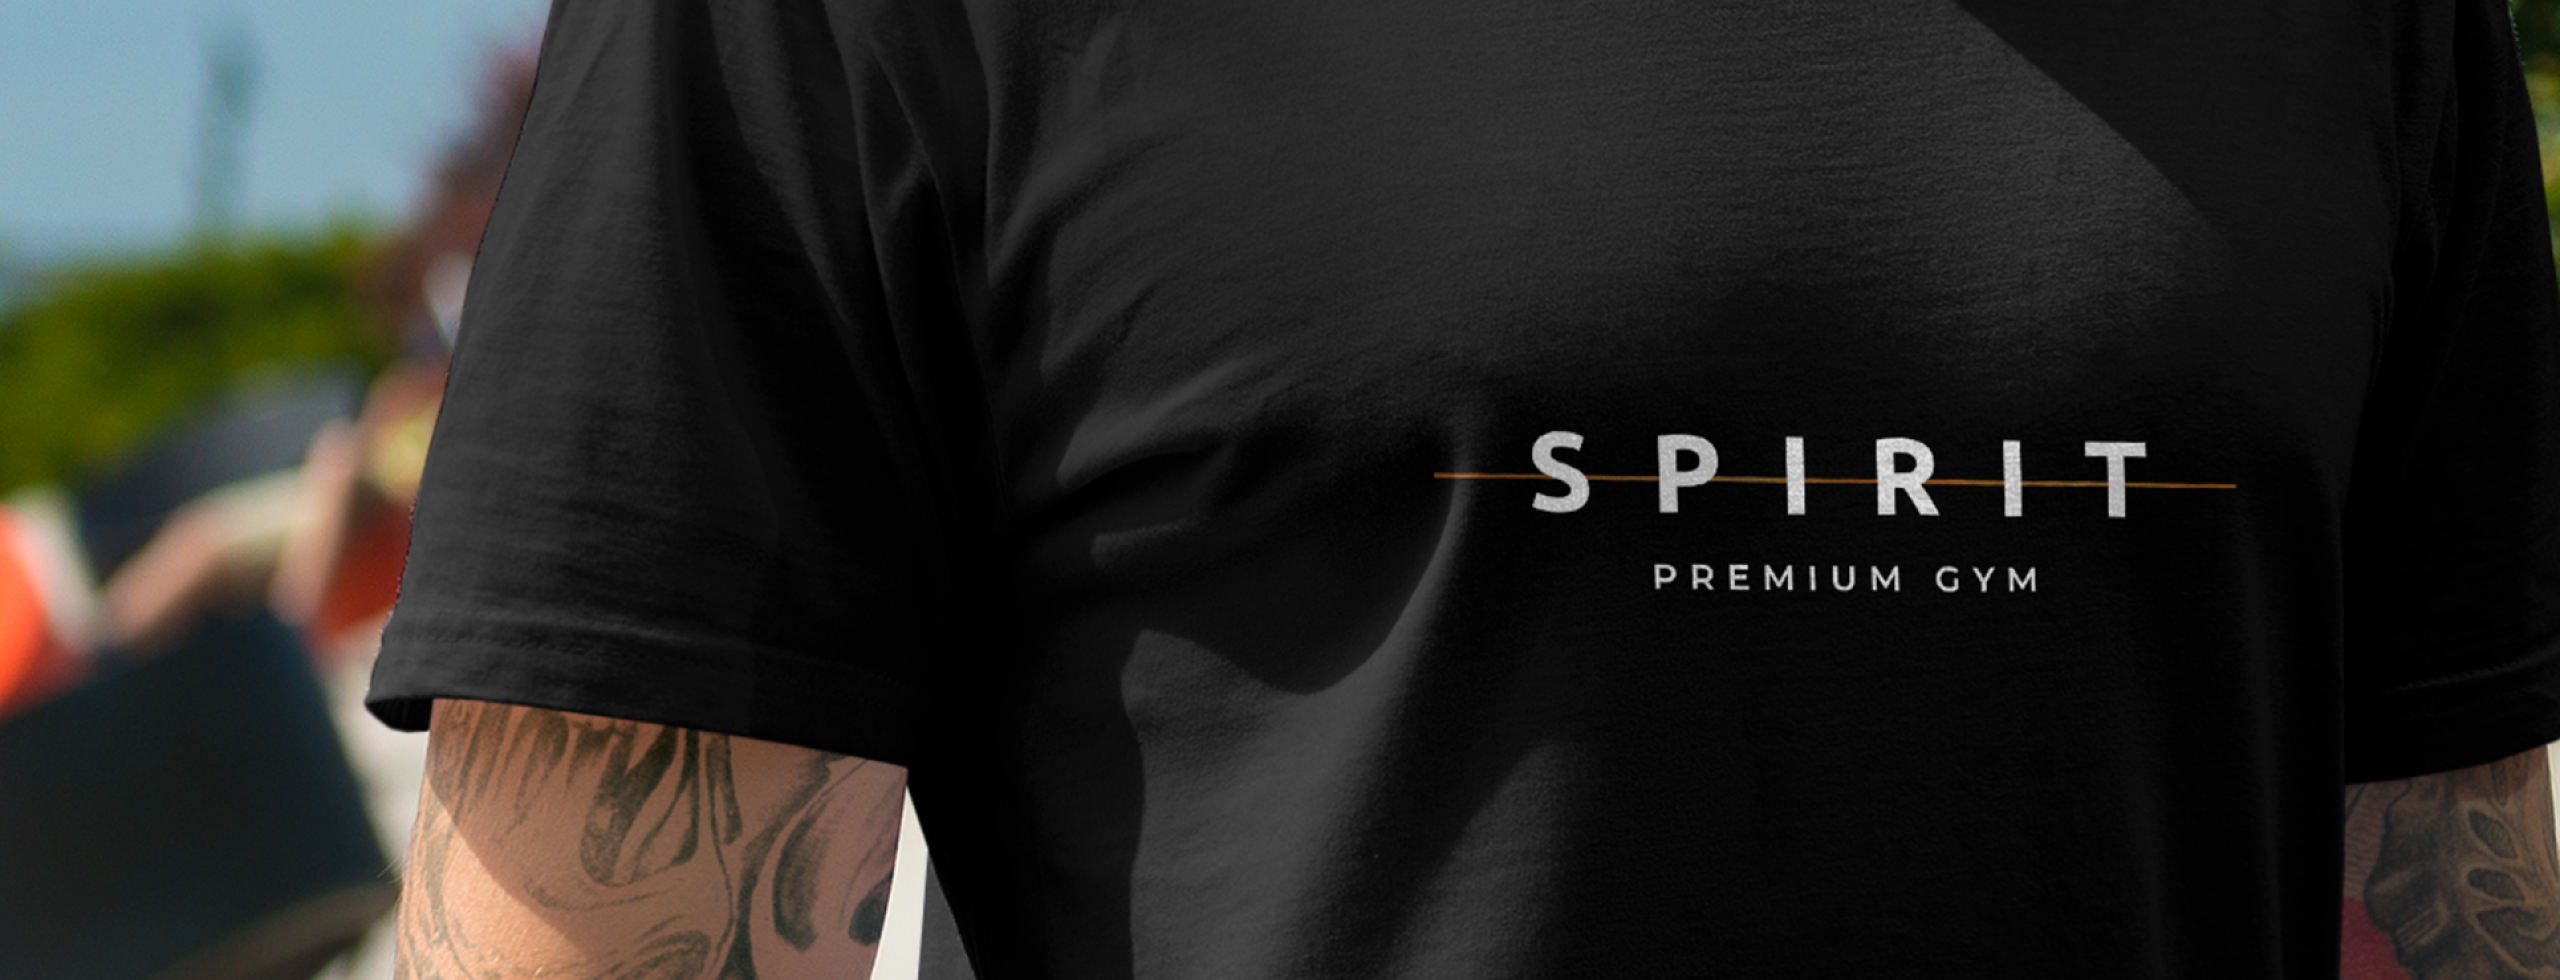 Design_Logo_SpiritPremiumFitness_Banner